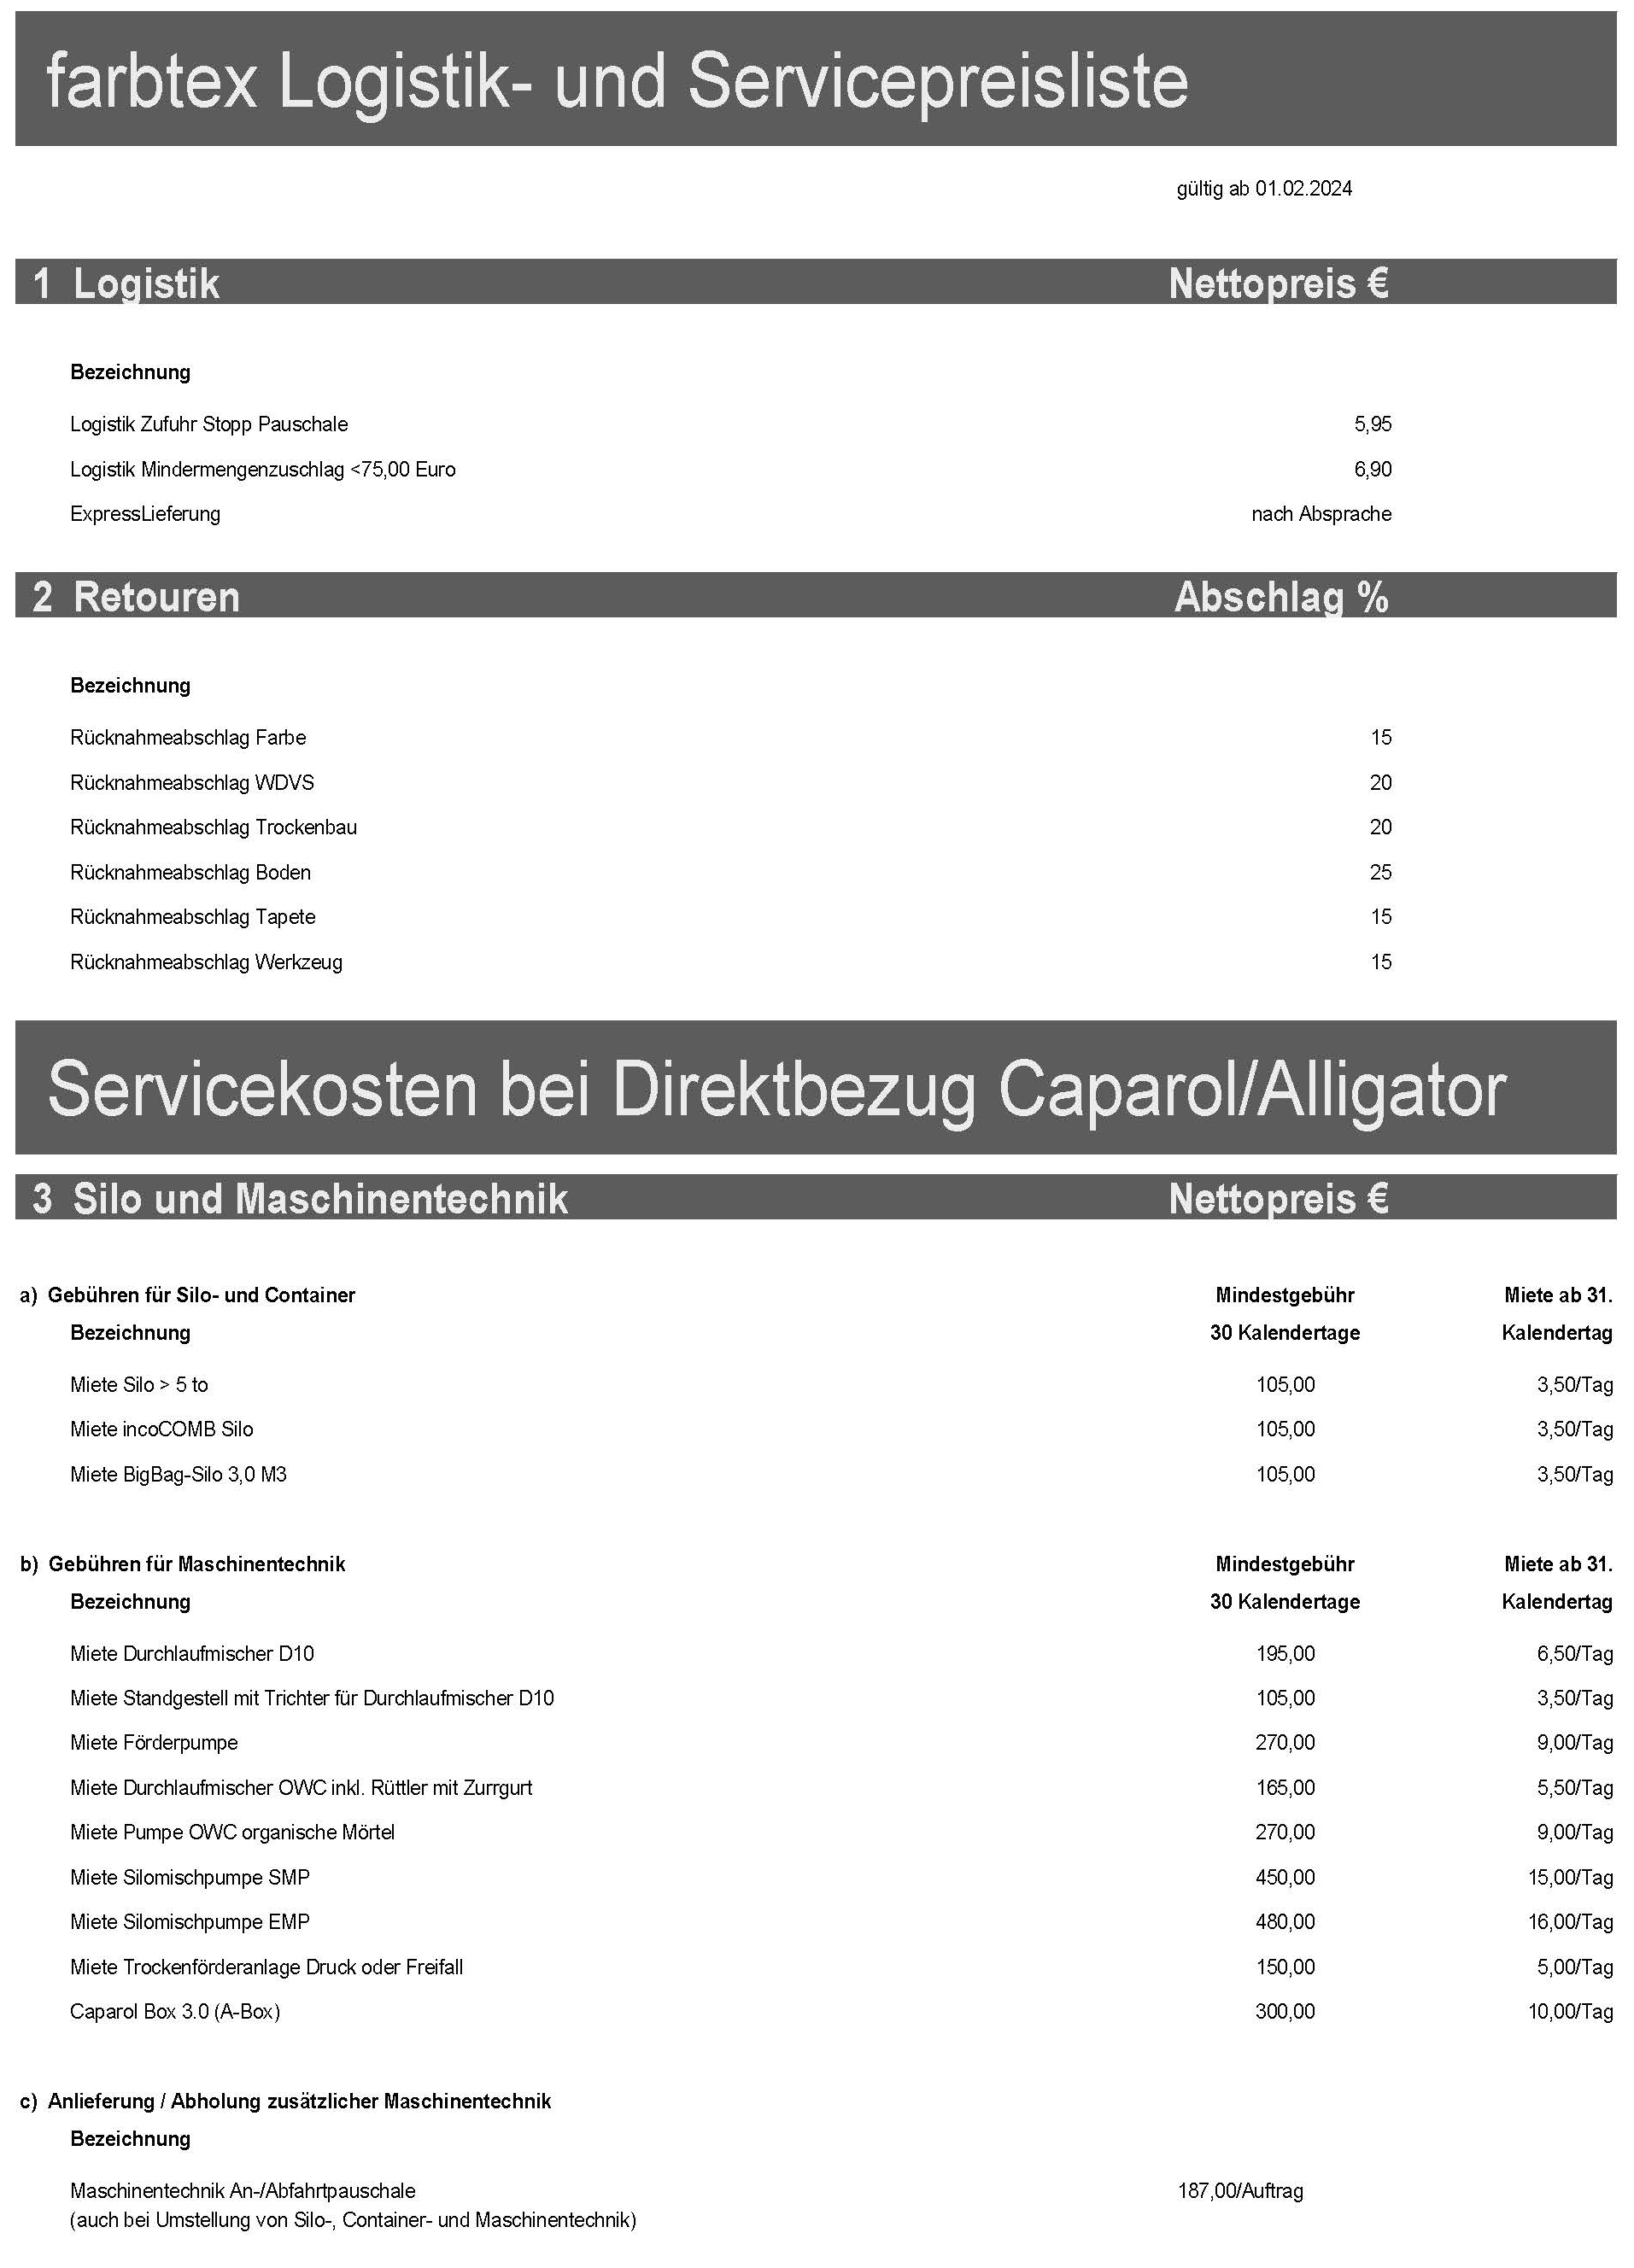 farbtex_Logistik_und_Servicepreisliste_Jan_2024_Seite_1c.jpg